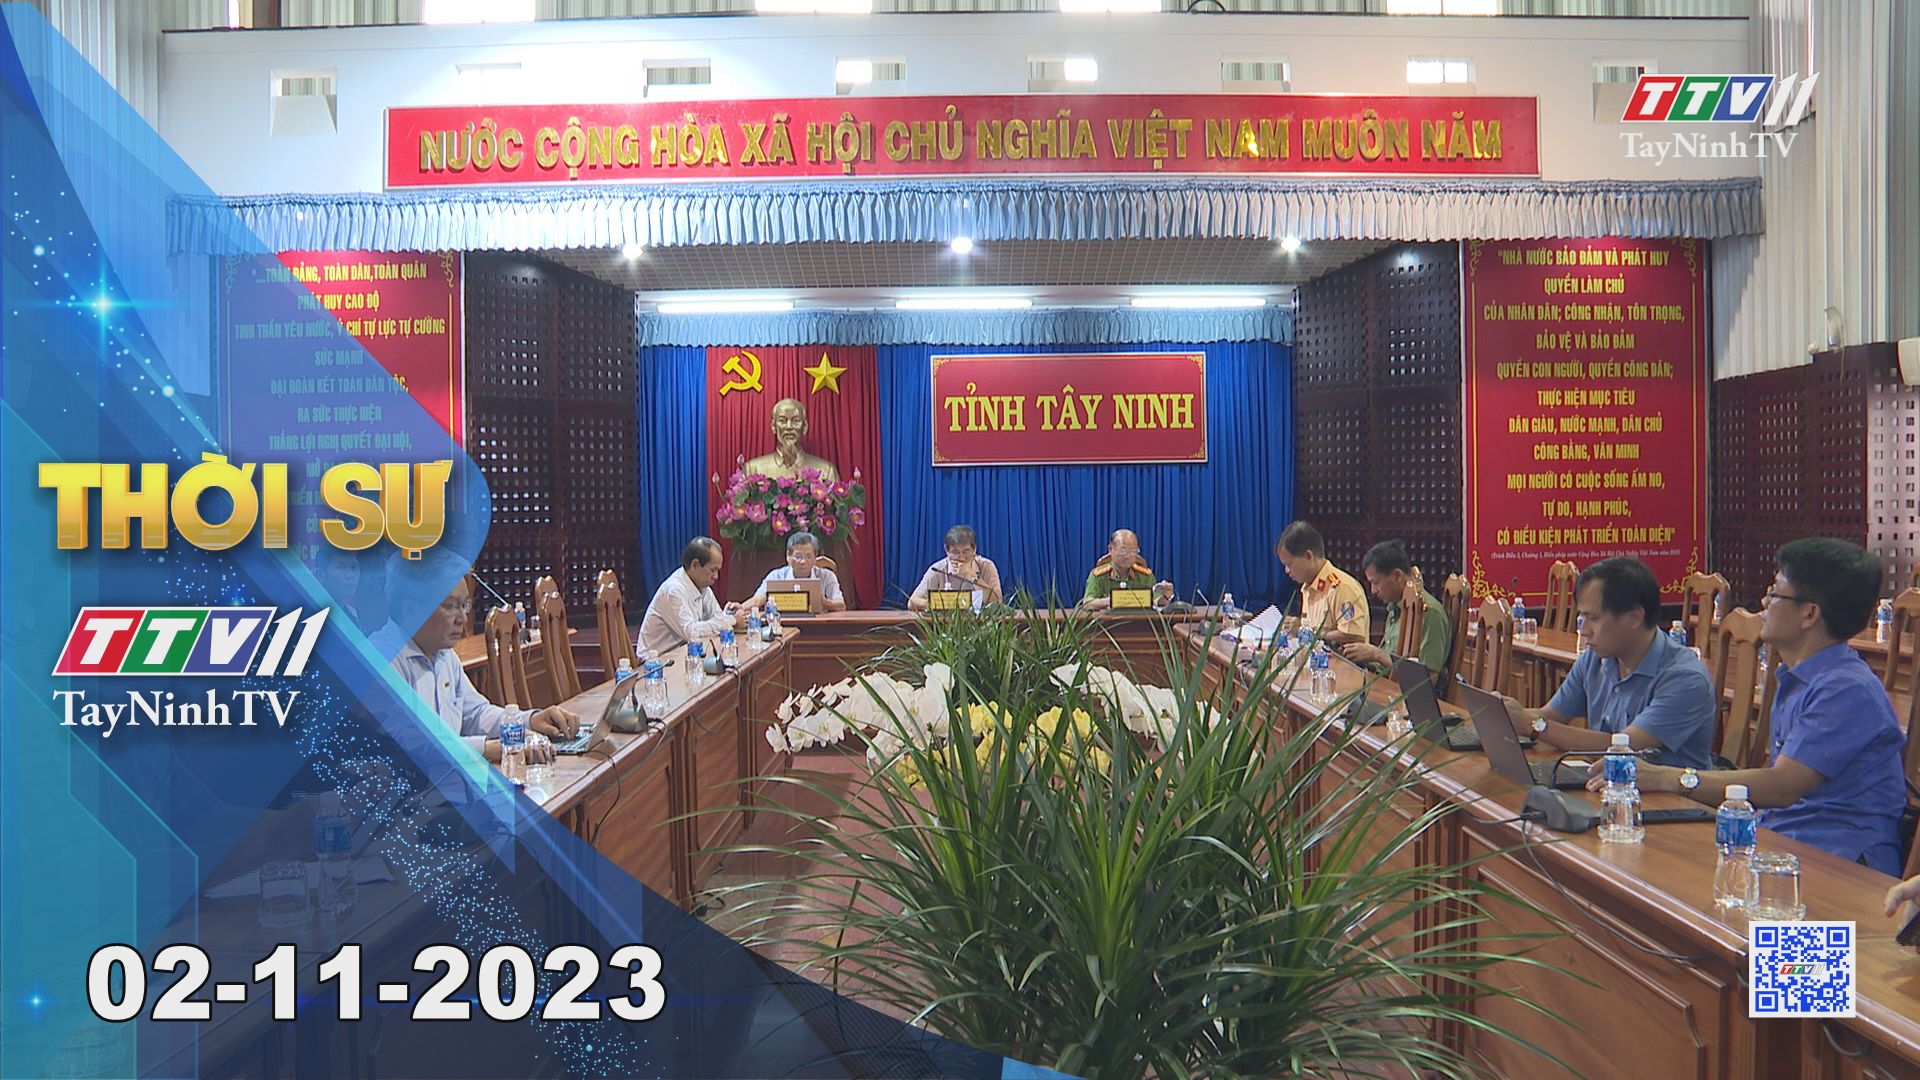 Thời sự Tây Ninh 02-11-2023 | Tin tức hôm nay | TayNinhTV